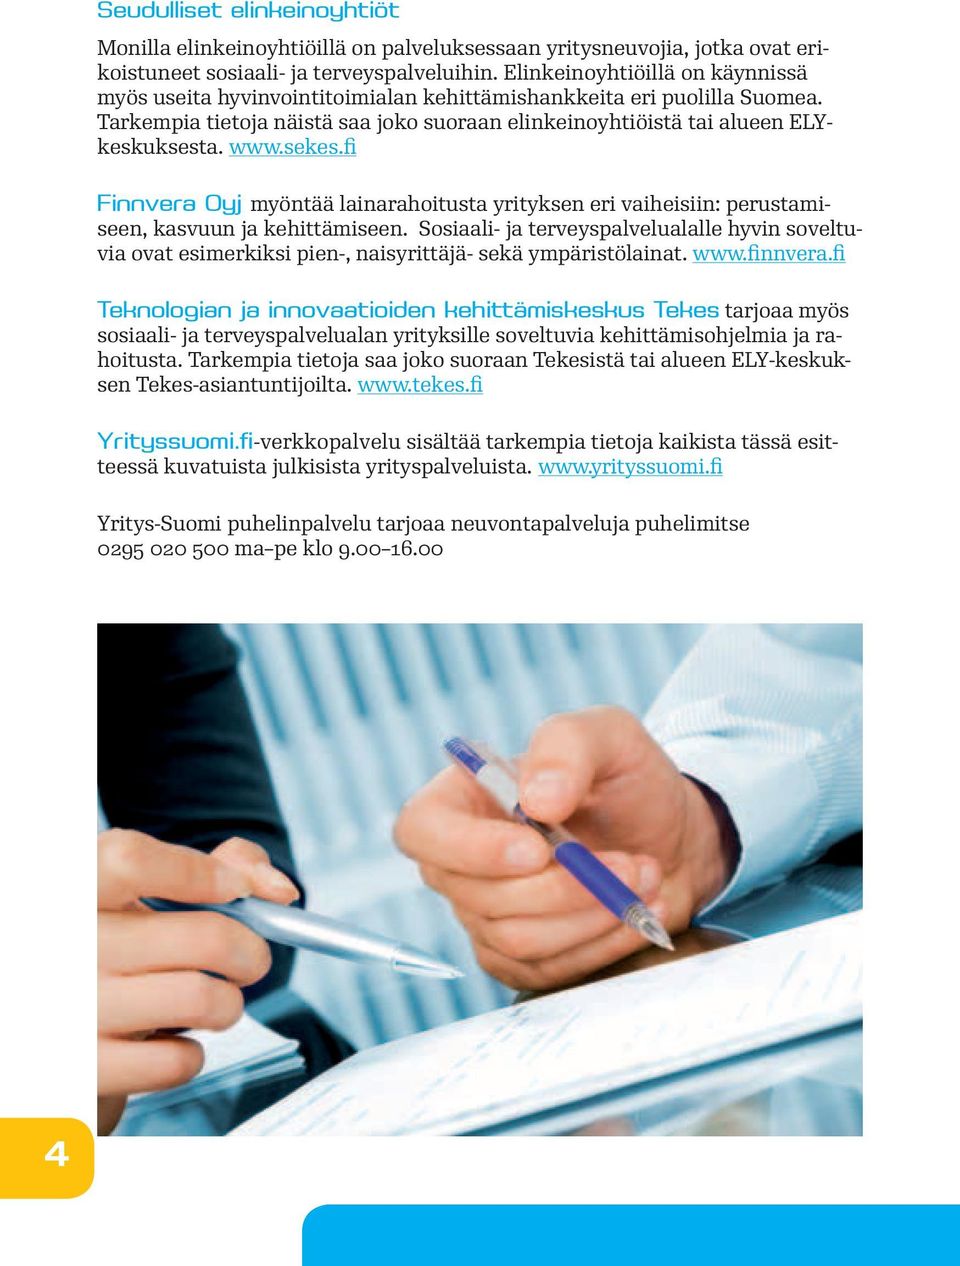 sekes.fi Finnvera Oyj myöntää lainarahoitusta yrityksen eri vaiheisiin: perustamiseen, kasvuun ja kehittämiseen.